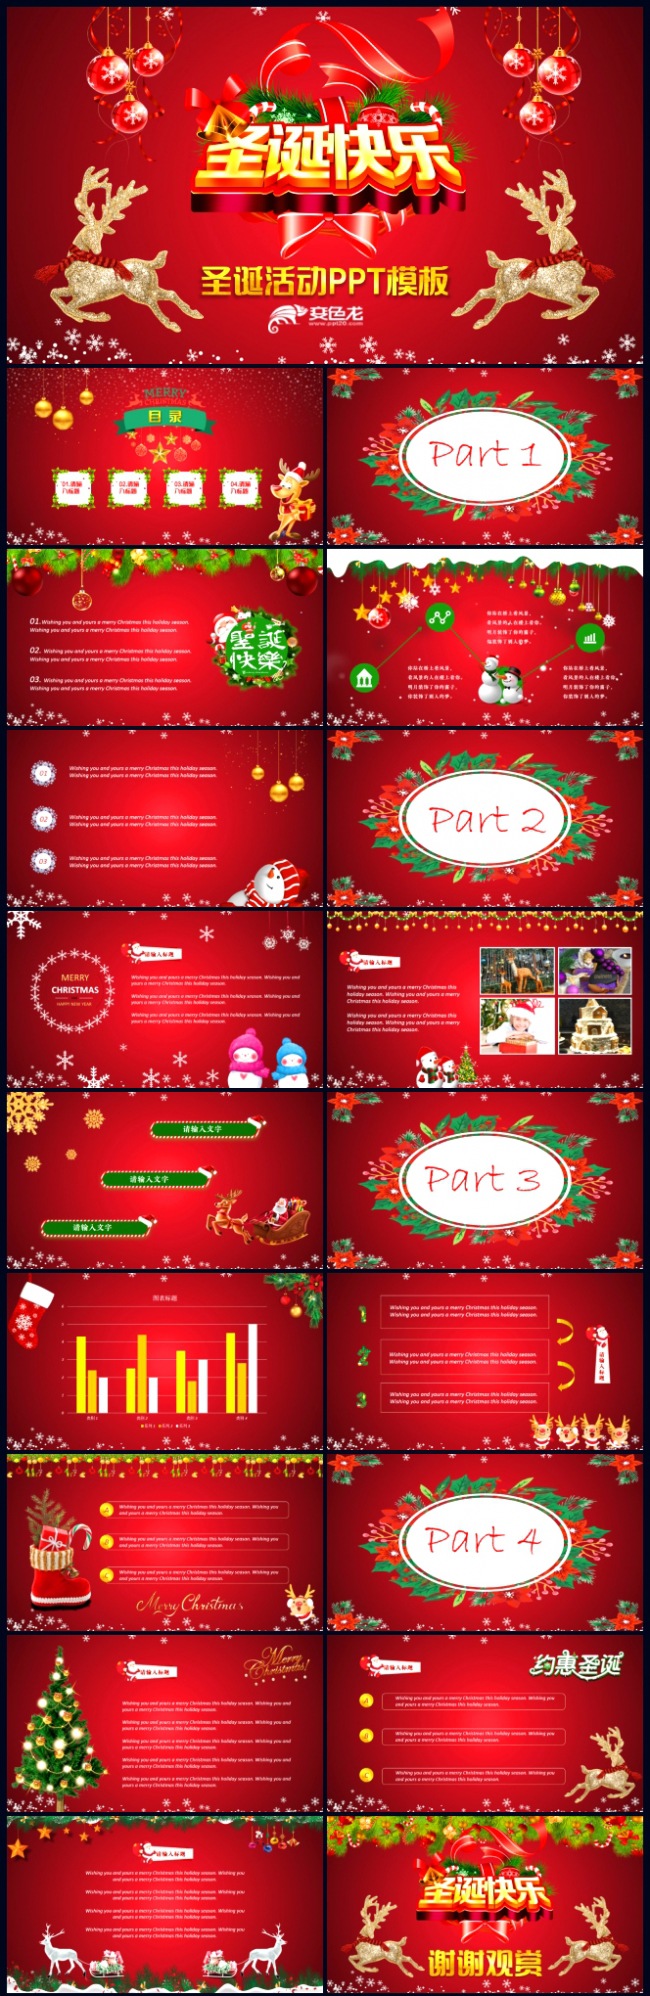 【西方节日】欢乐红色炫酷圣诞节活动教学讲义PPT模板